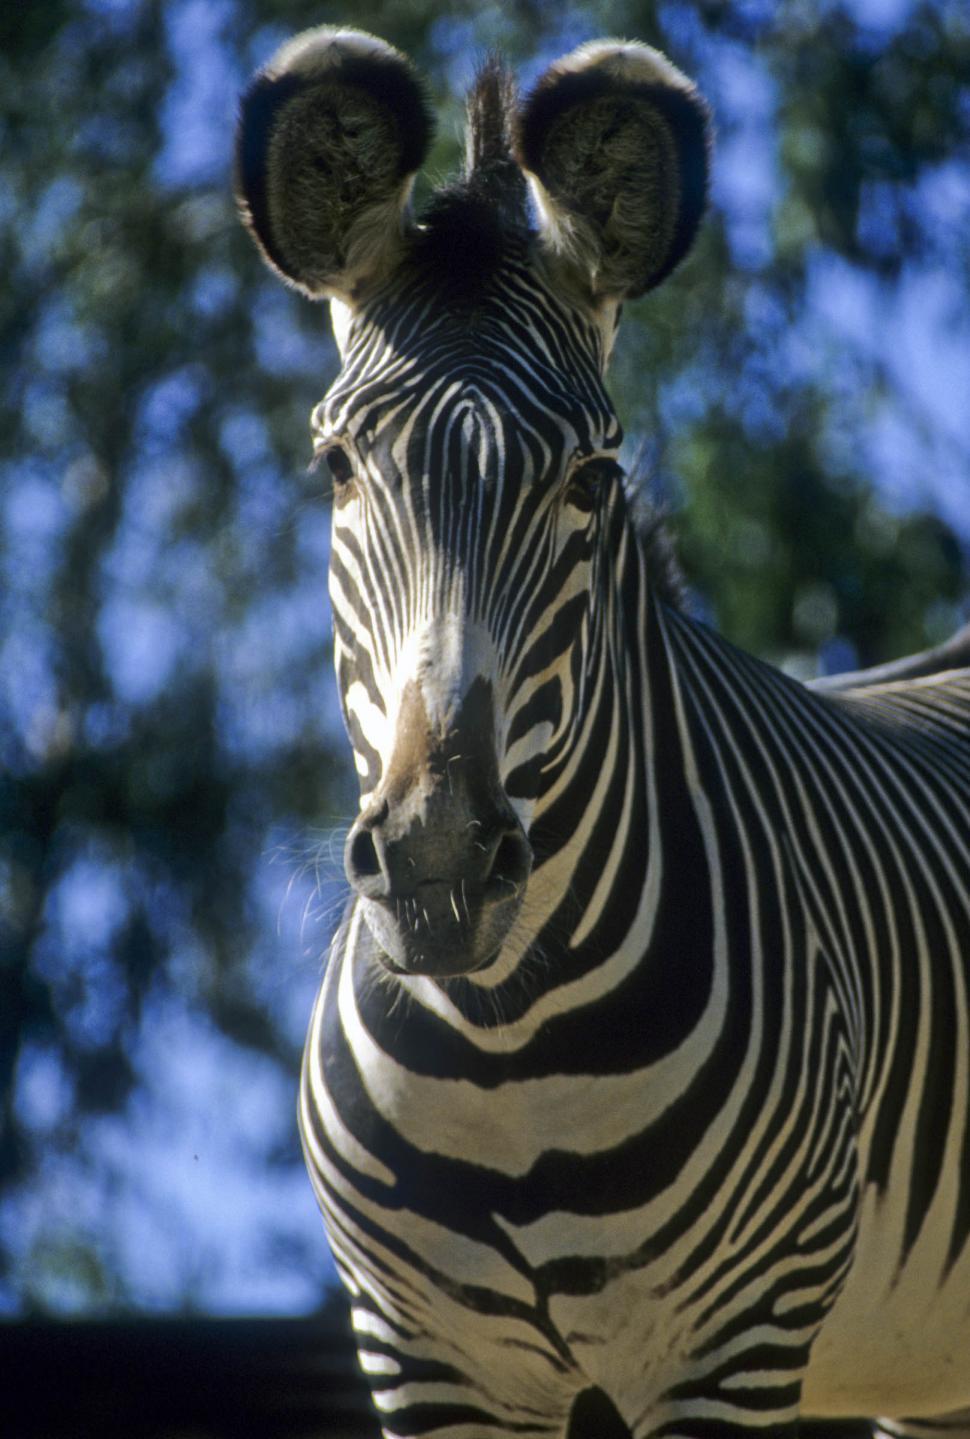 Free Image of curious zebra 